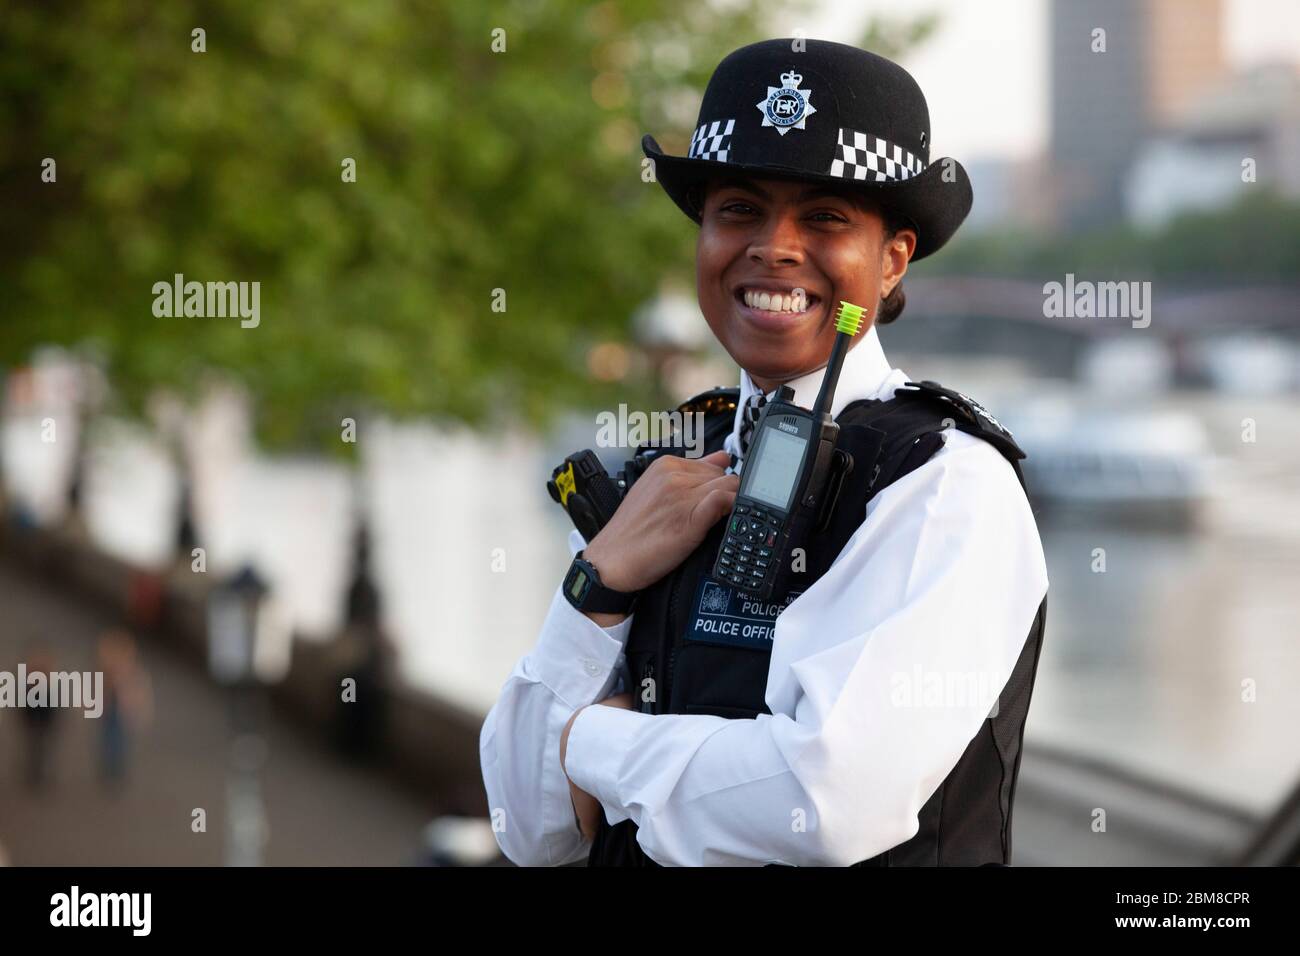 Londra, UK, 7 maggio 2020: Gli agenti di polizia della polizia metropolitana pattugliano il Westminster Bridge mentre le folle si riuniscono per il settimanale Clap per i nostri caregoni. Il distanziamento sociale è stato osservato principalmente ed è stato un evento di buona natura. Anna Watson/Alamy Live News Foto Stock